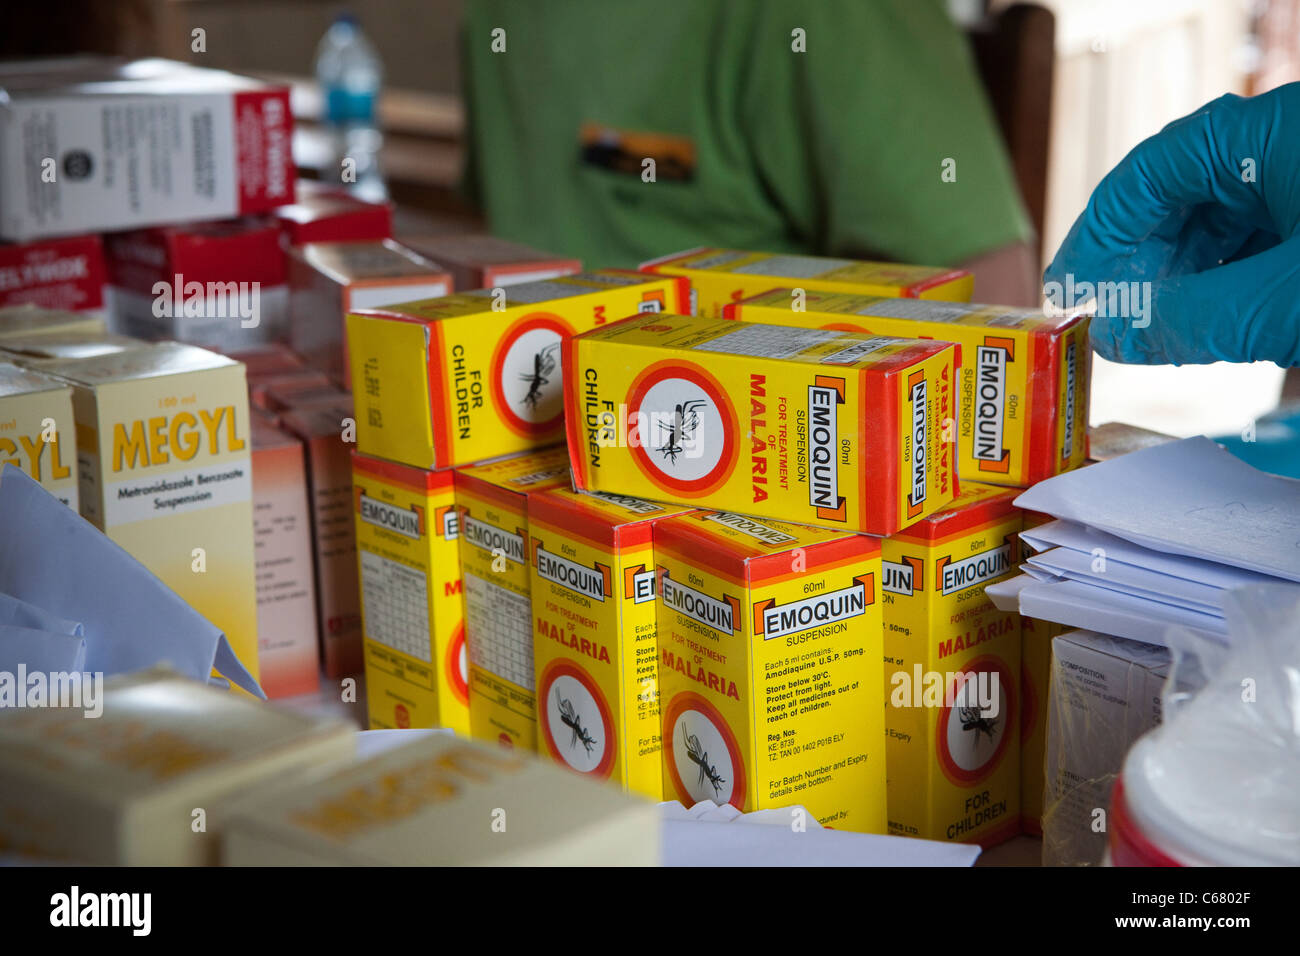 Malaria-Medikament in einer Apotheke - Tansania, Afrika. Stockfoto